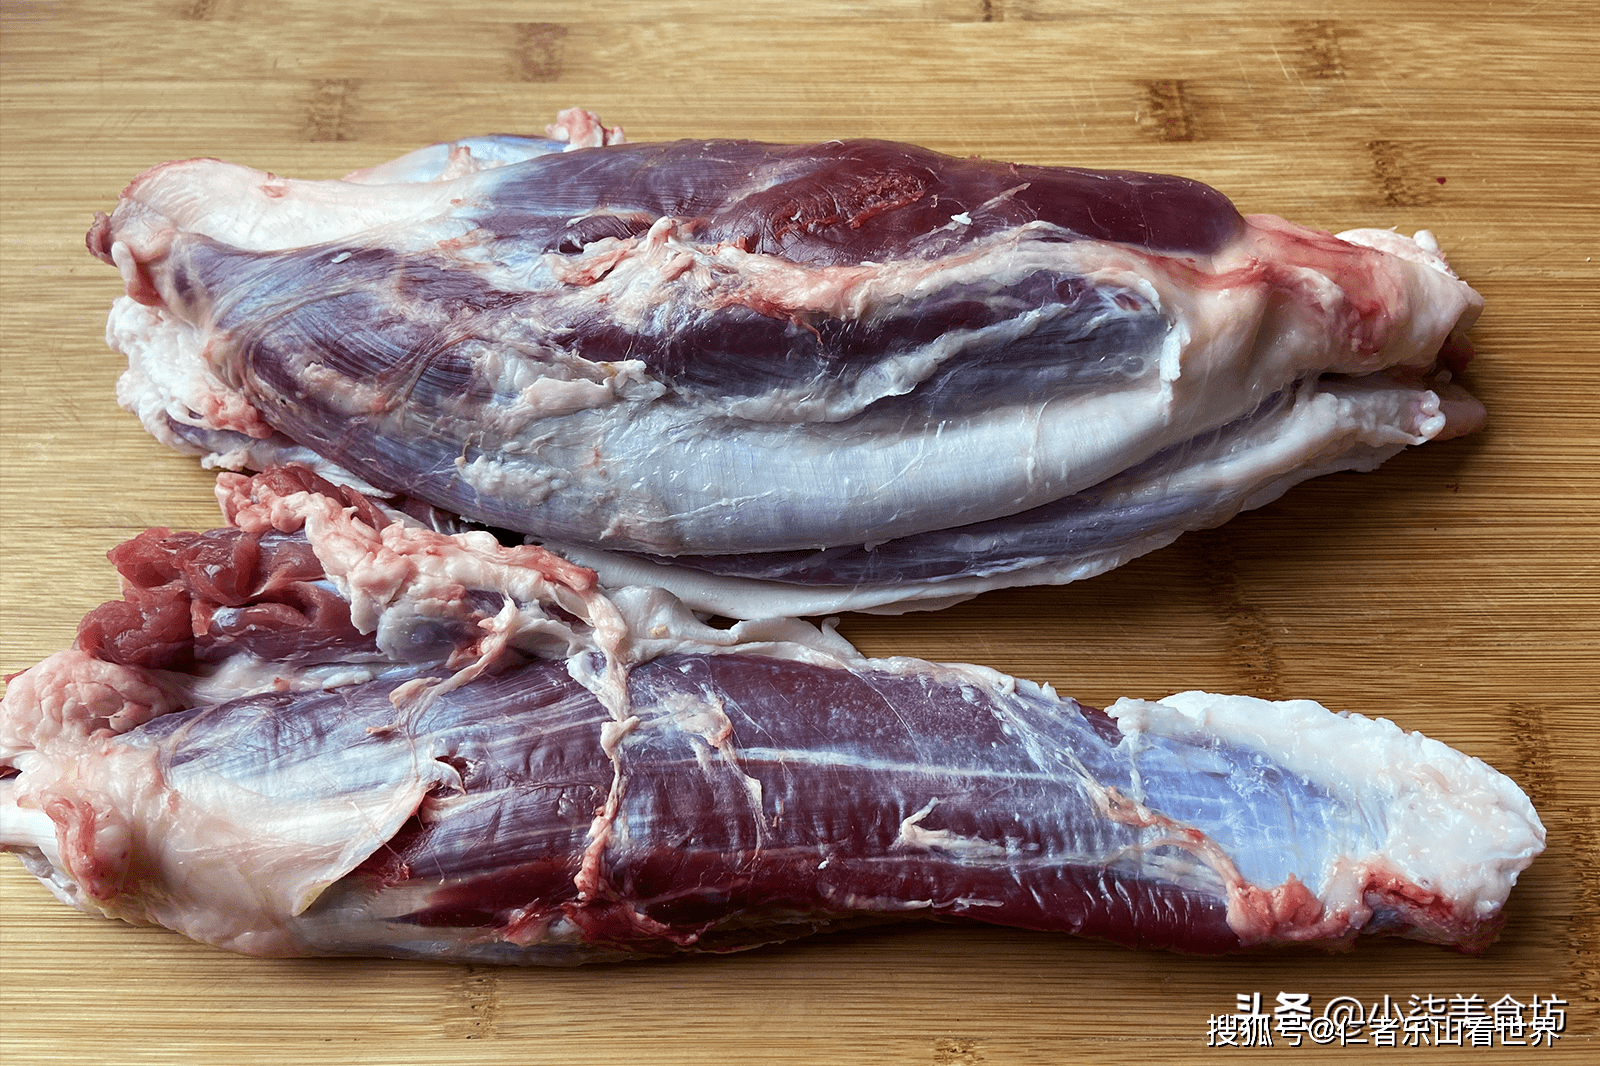 2,处理好的牛腱子肉先冲洗干净放在凉水里浸泡1个小时,泡出牛肉里的